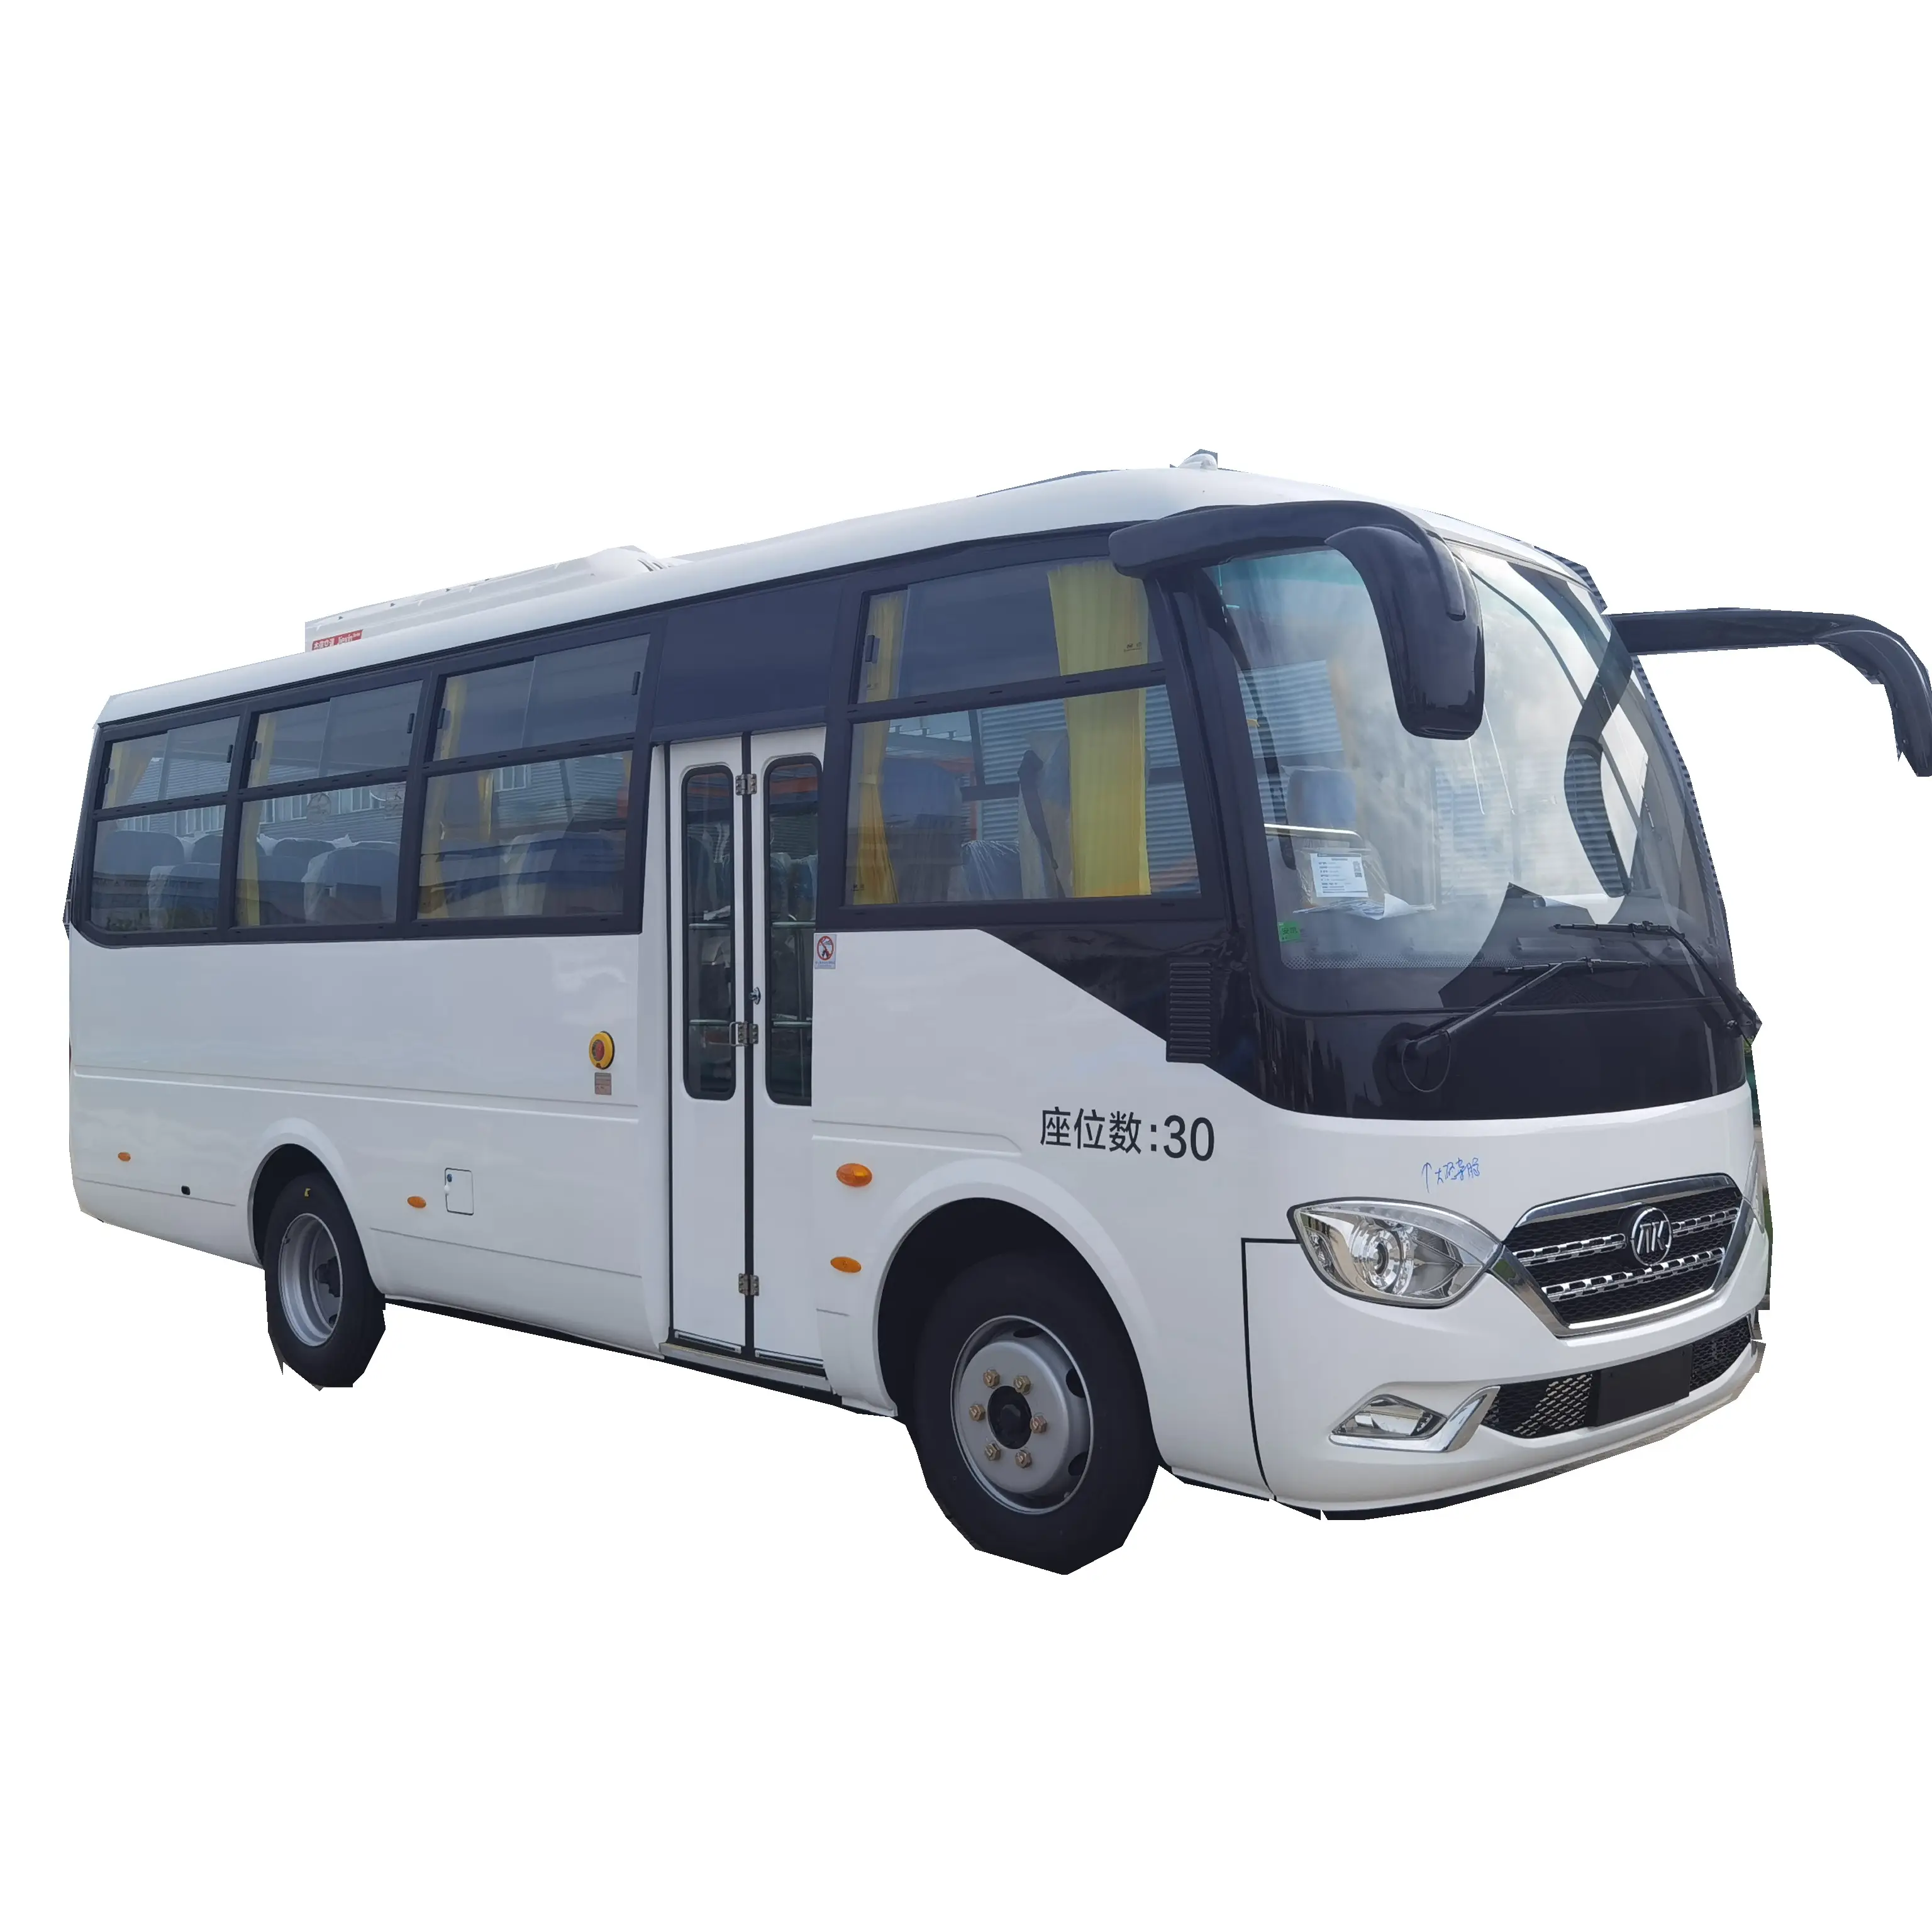 Luxus Tour Passagier bus Bus zum Verkauf Preis von New Max White Metallic Diesel Body Motor Farb getriebe Farbe HUB Origin